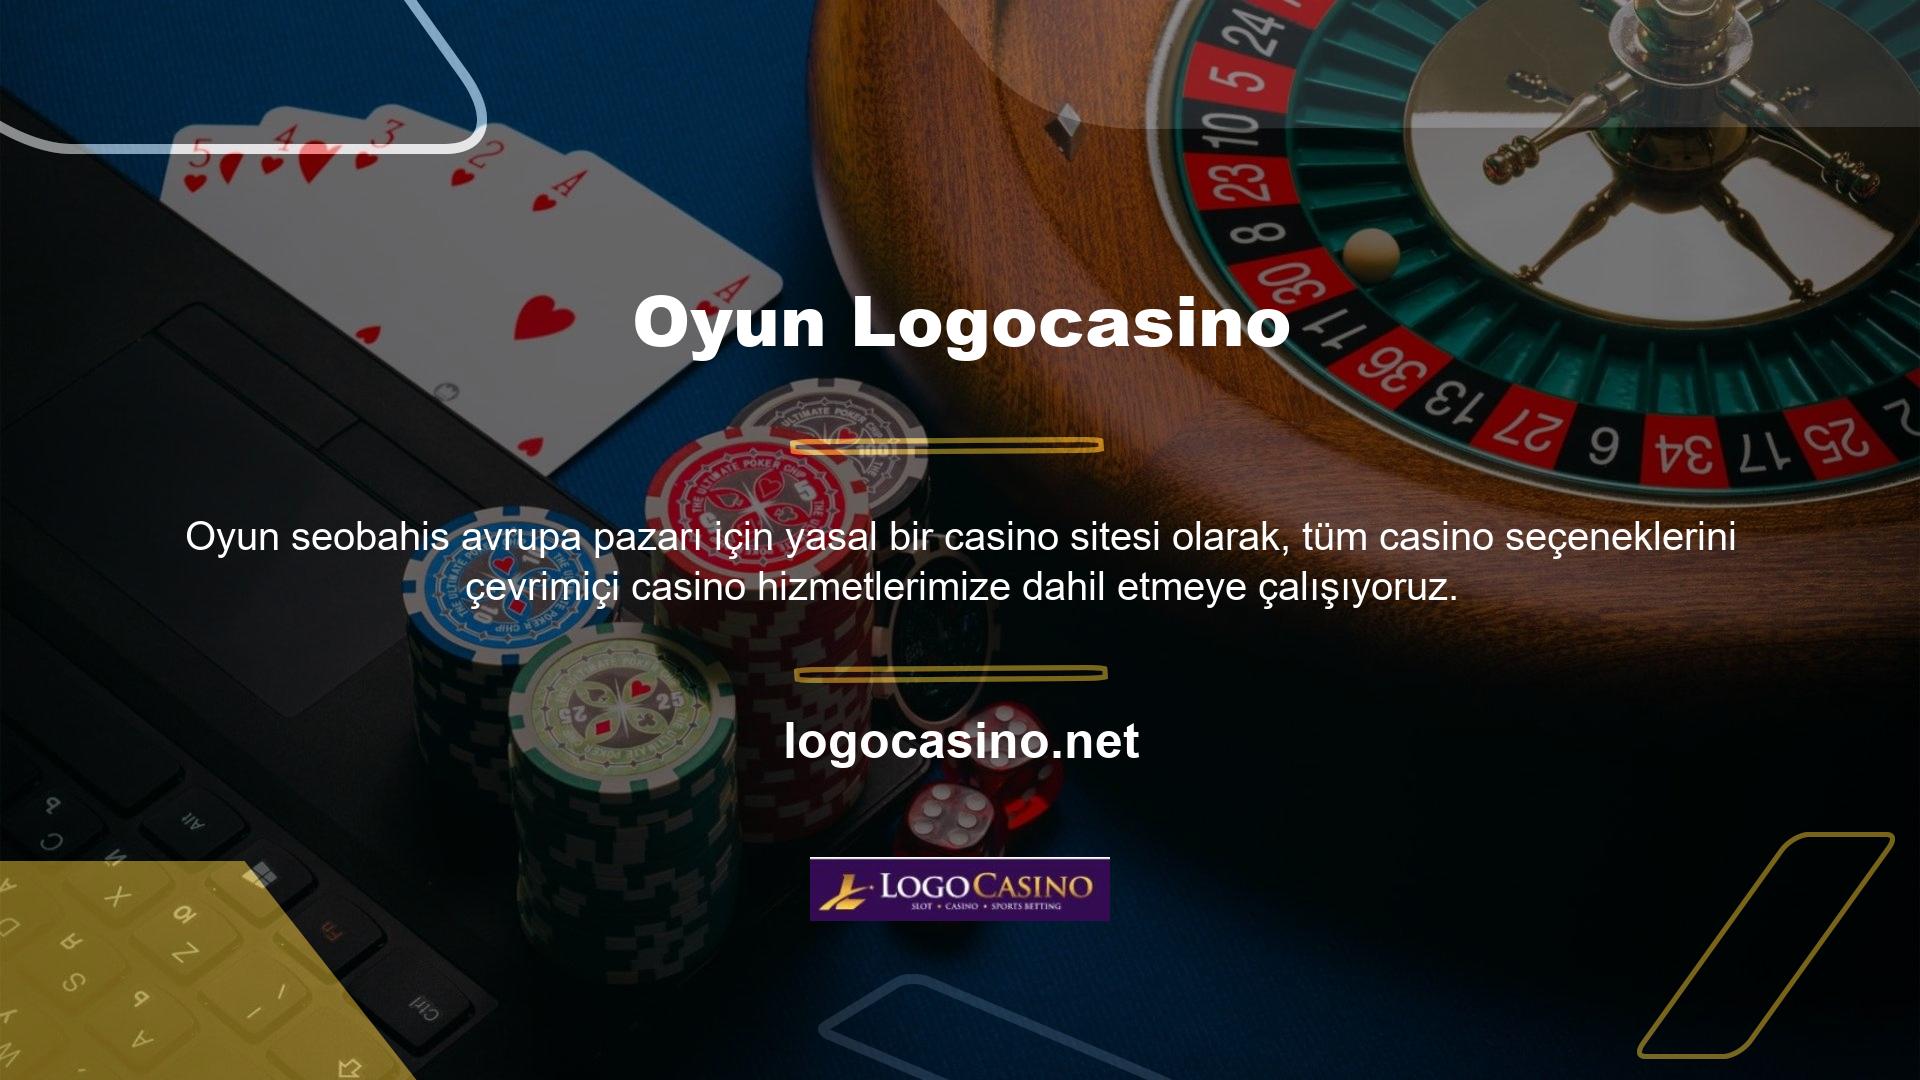 Casino oyunları Türkiye'de yasa dışı olarak sunulmaktadır ve Logocasino oyunları için seçenekler şunlardır:

	Canlı TV
	Spor bahisleri,
	Canlı Casino
	Oyunlar,
	Casino,
	Oyun Gösterisi
	Tombala,
	Spor,

Logocasino Destek HizmetiLogocasino Casino sitesinin iletişim sayfası, kullanıcının kullanabileceği tüm destek hizmeti seçeneklerini gösterir